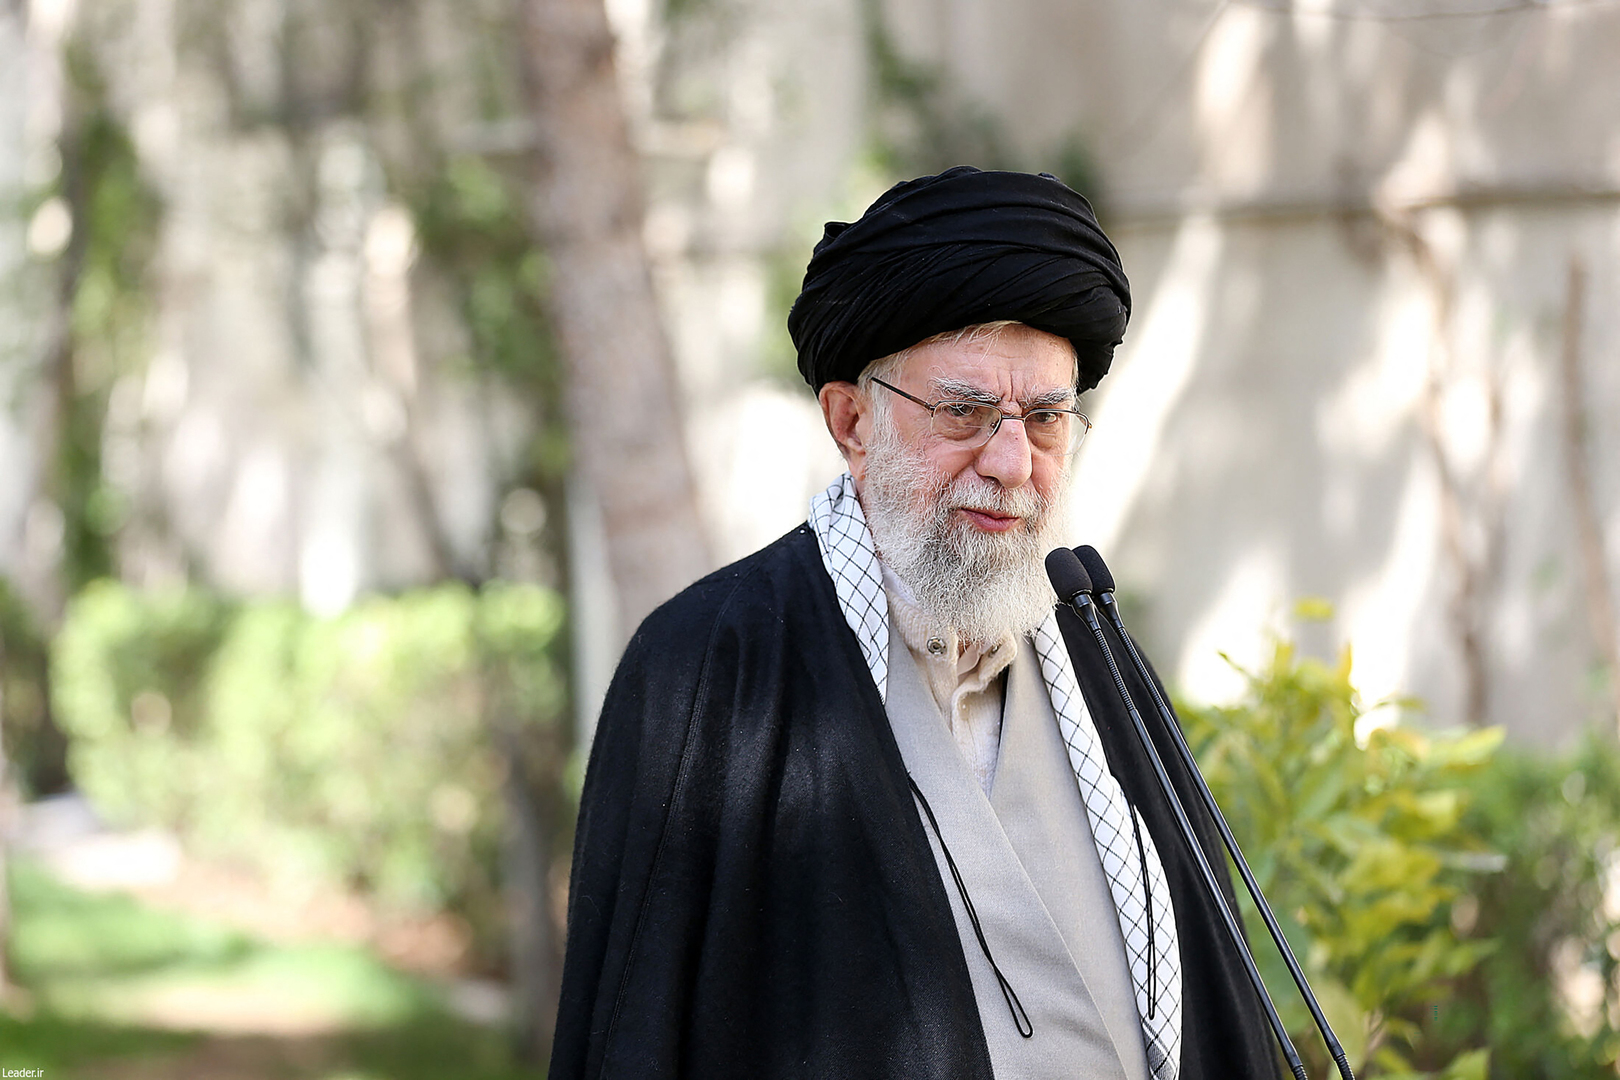 خامنئي:  العدو يسعى وراء تغيير هوية الجمهورية الإسلامية الإيرانية وتشكيل حكومة موالية له